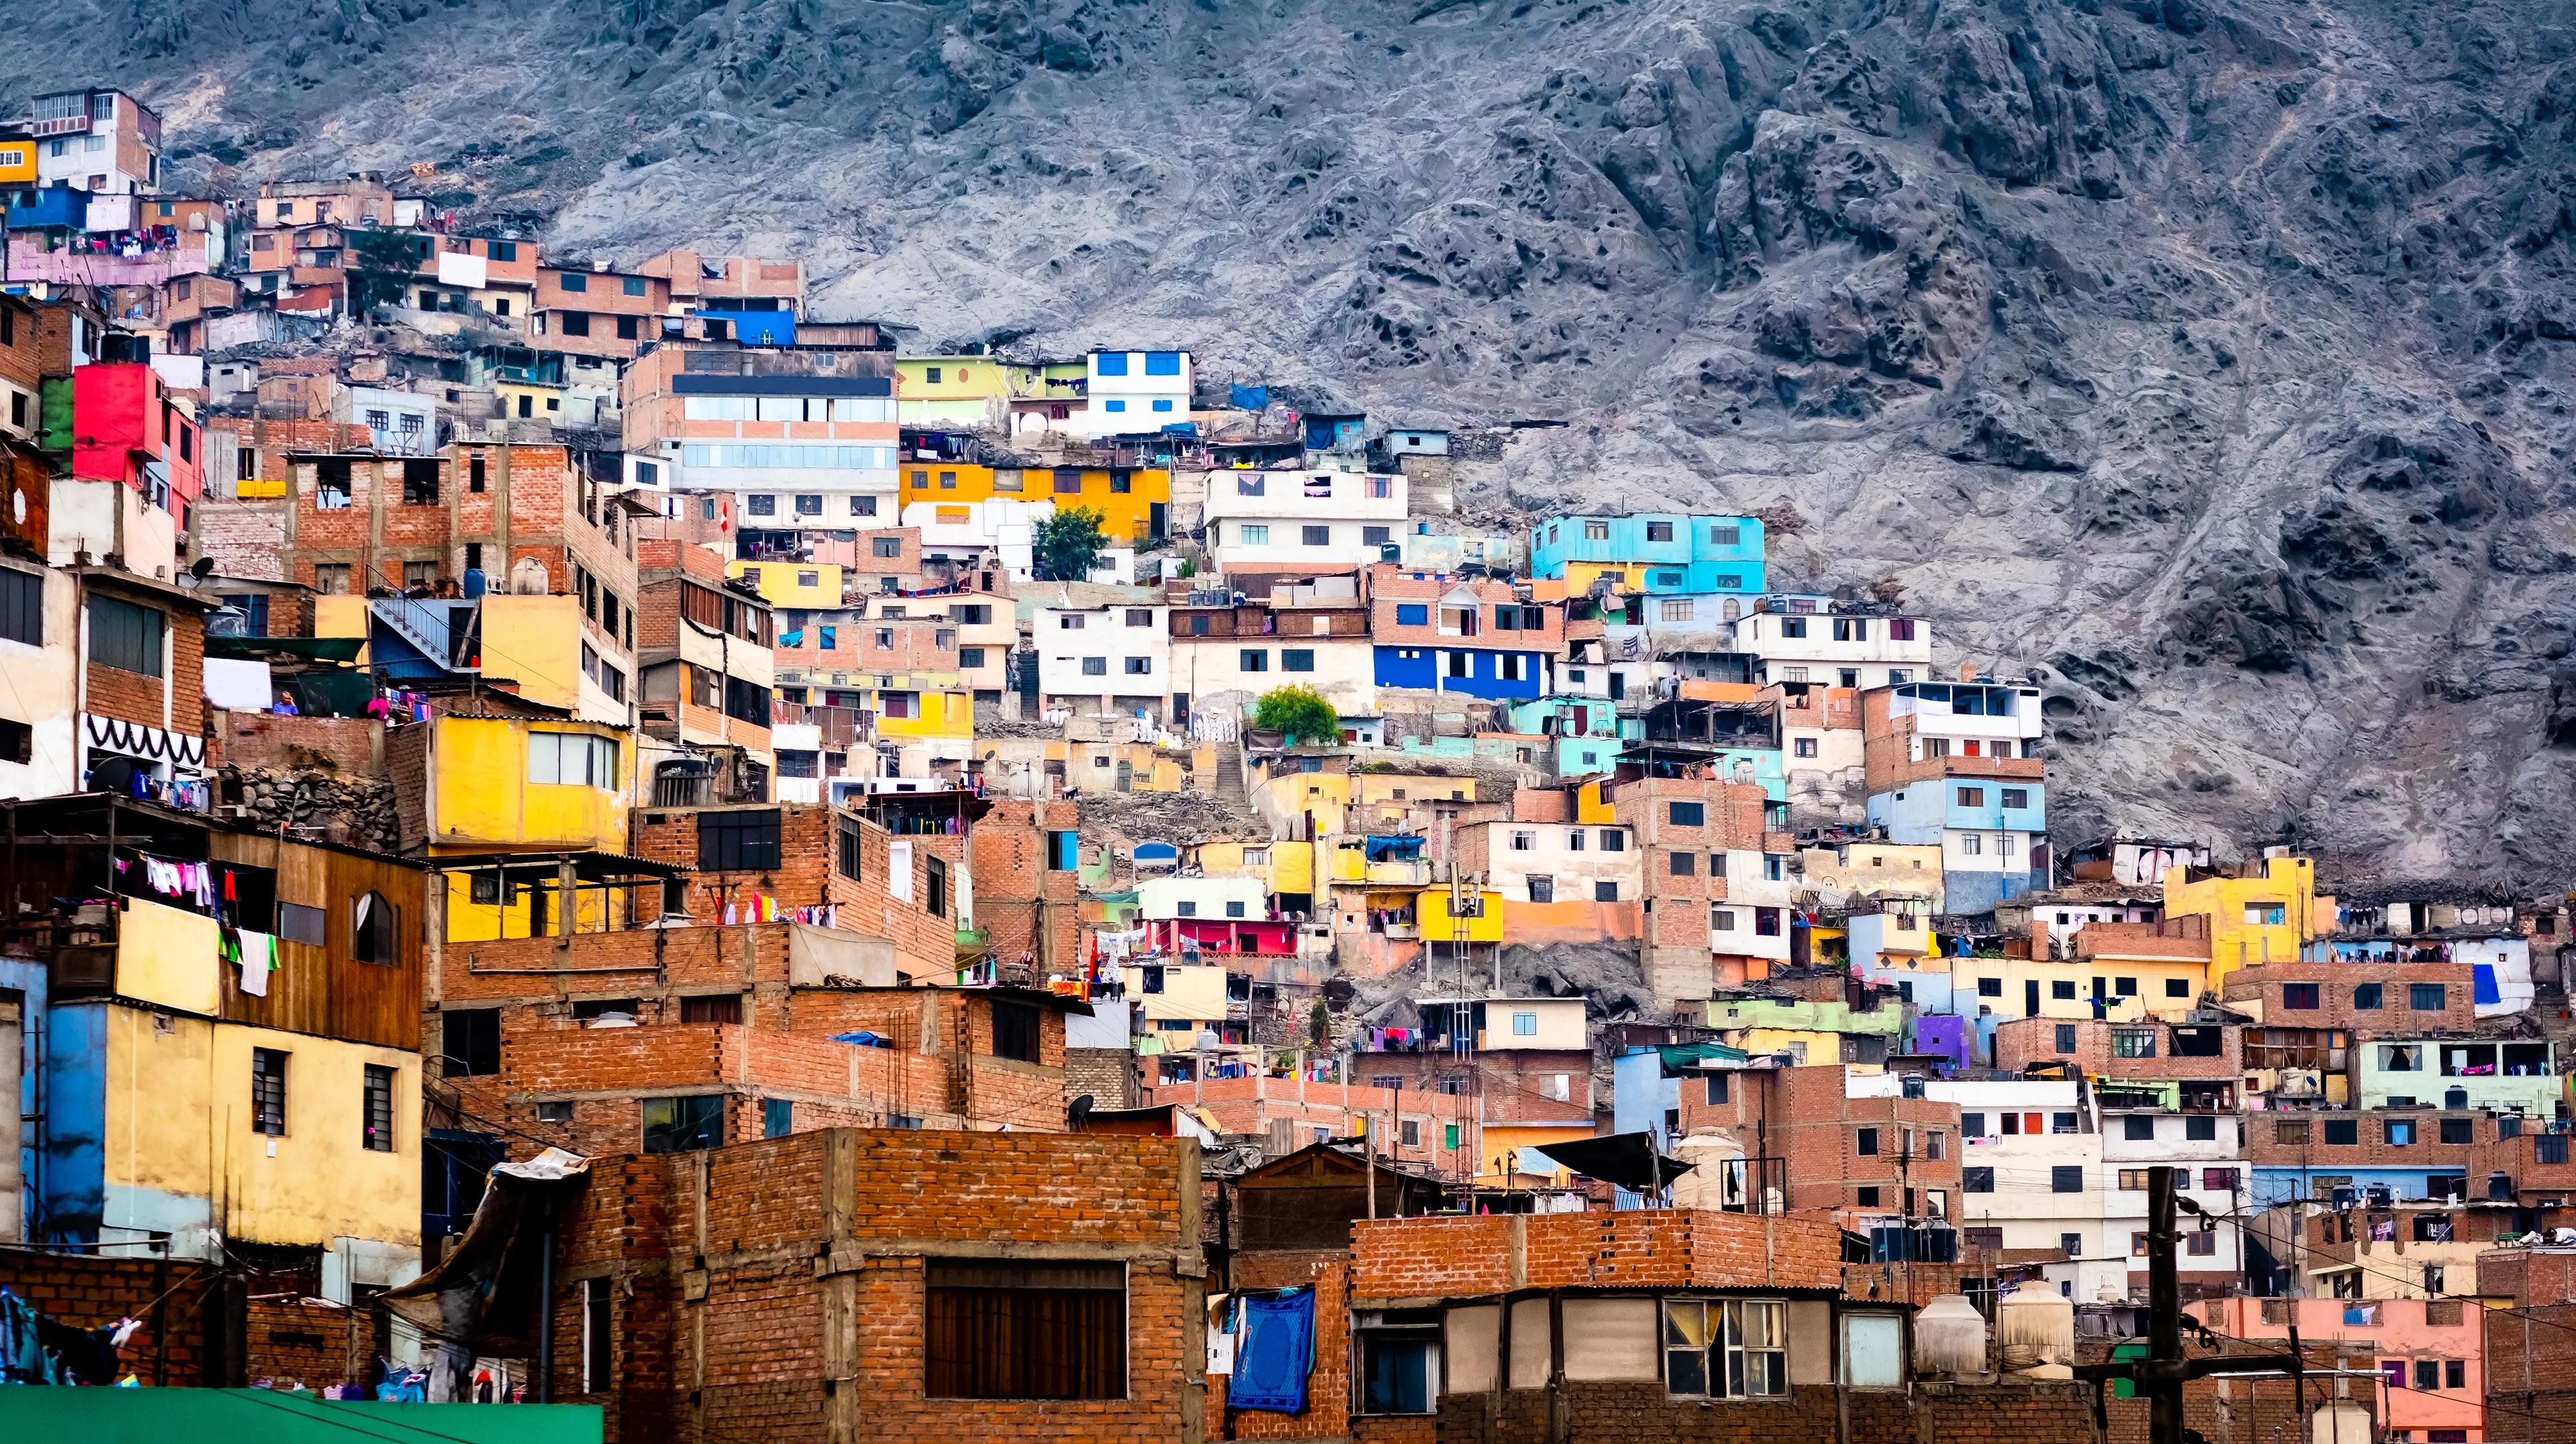 Different colorful slum buildings